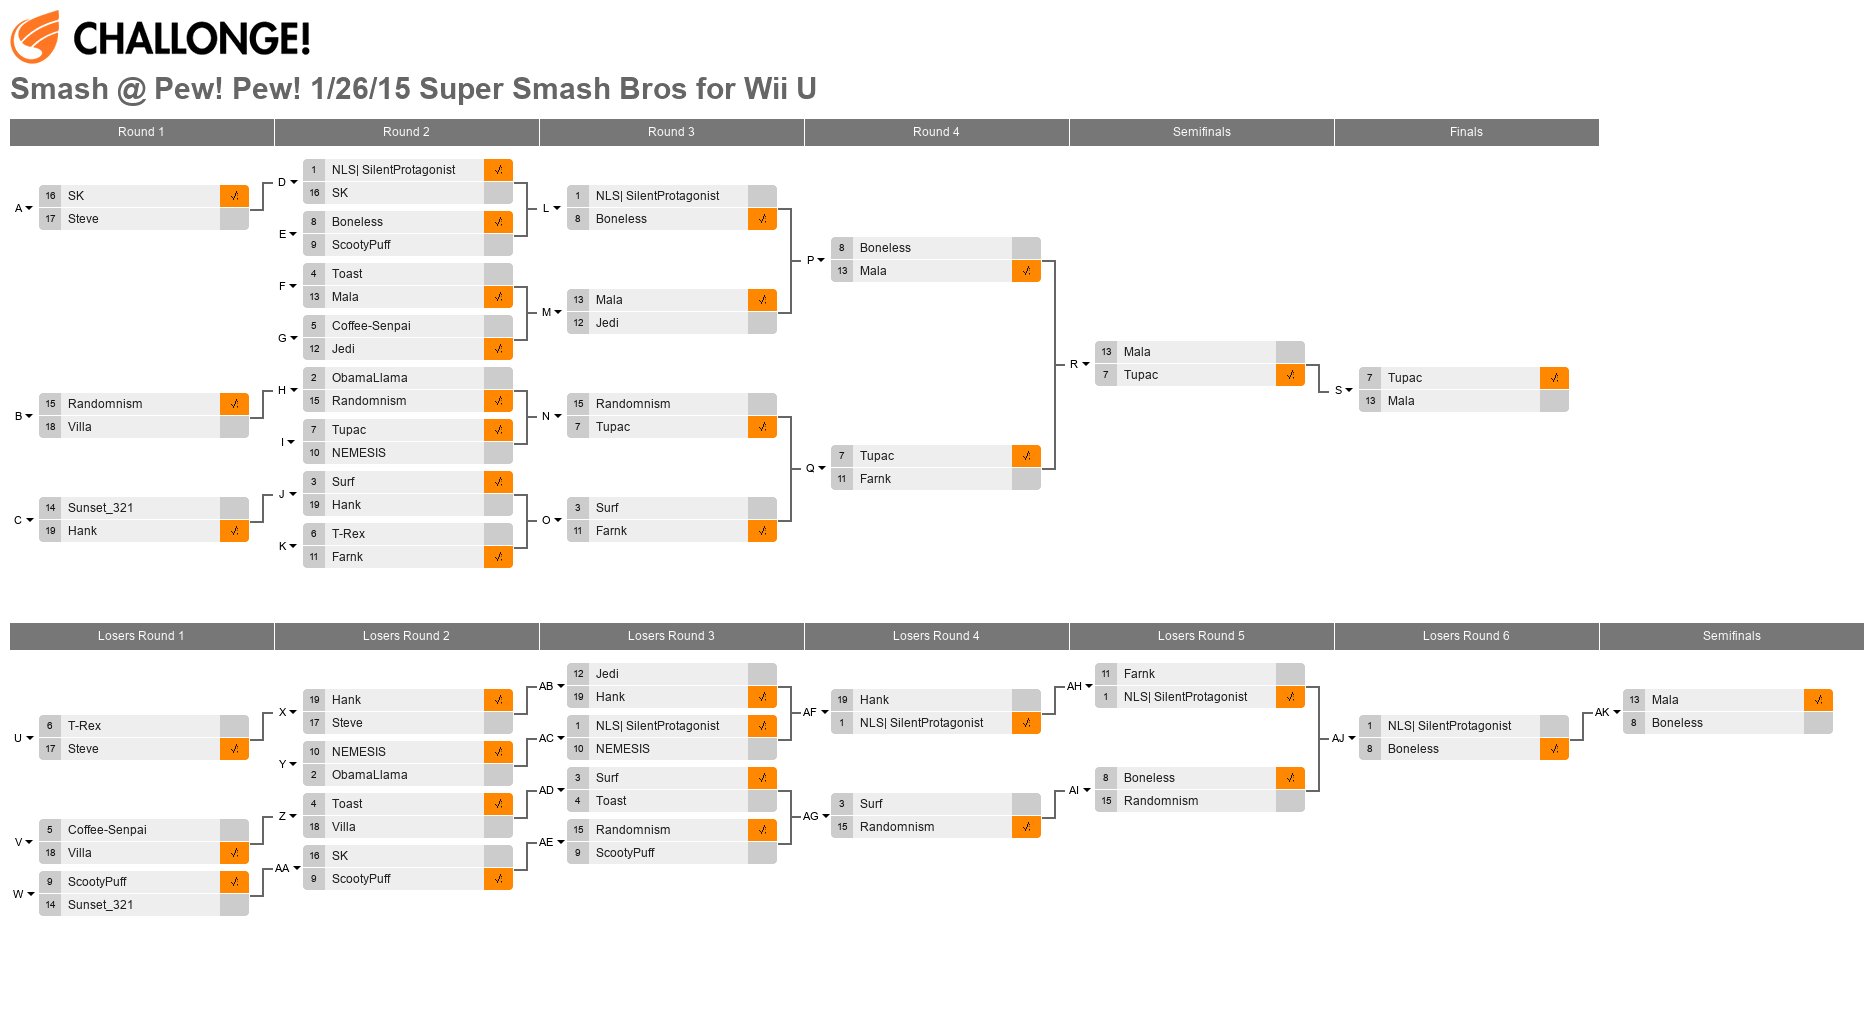 Smash @ Pew! Pew! 1/26/15 Super Smash Bros for Wii U